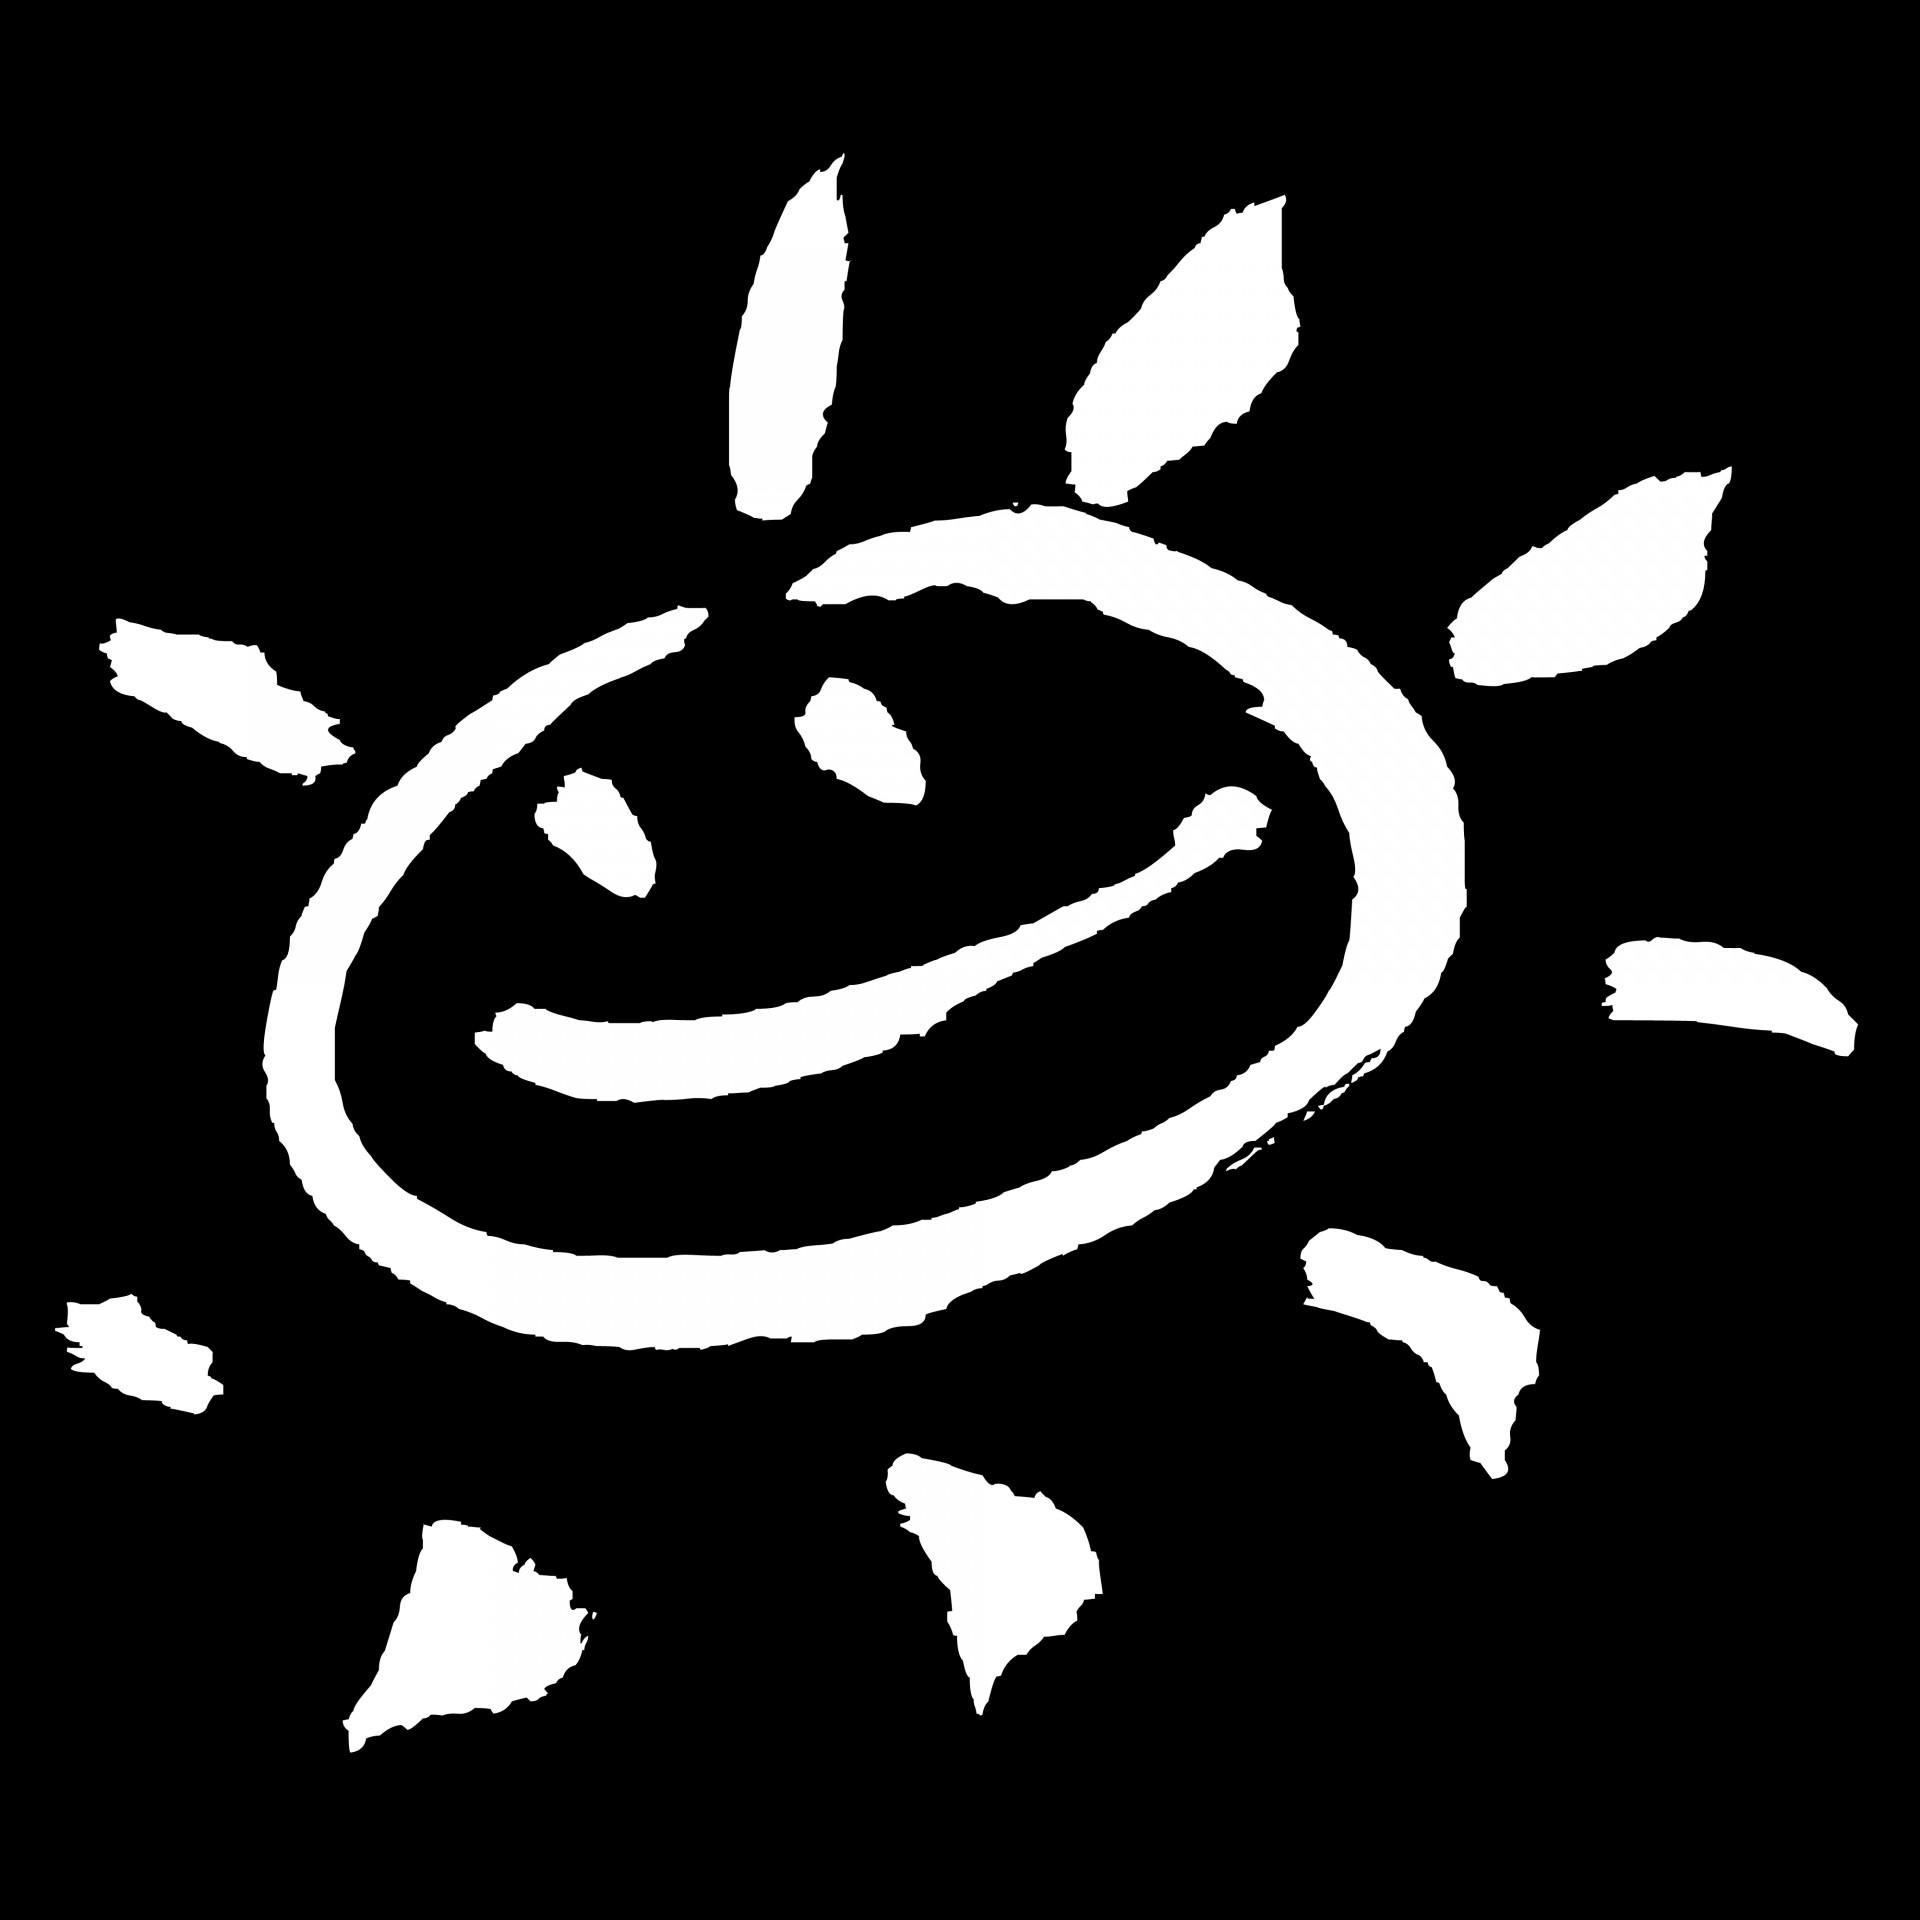 sun caricature doodle free photo